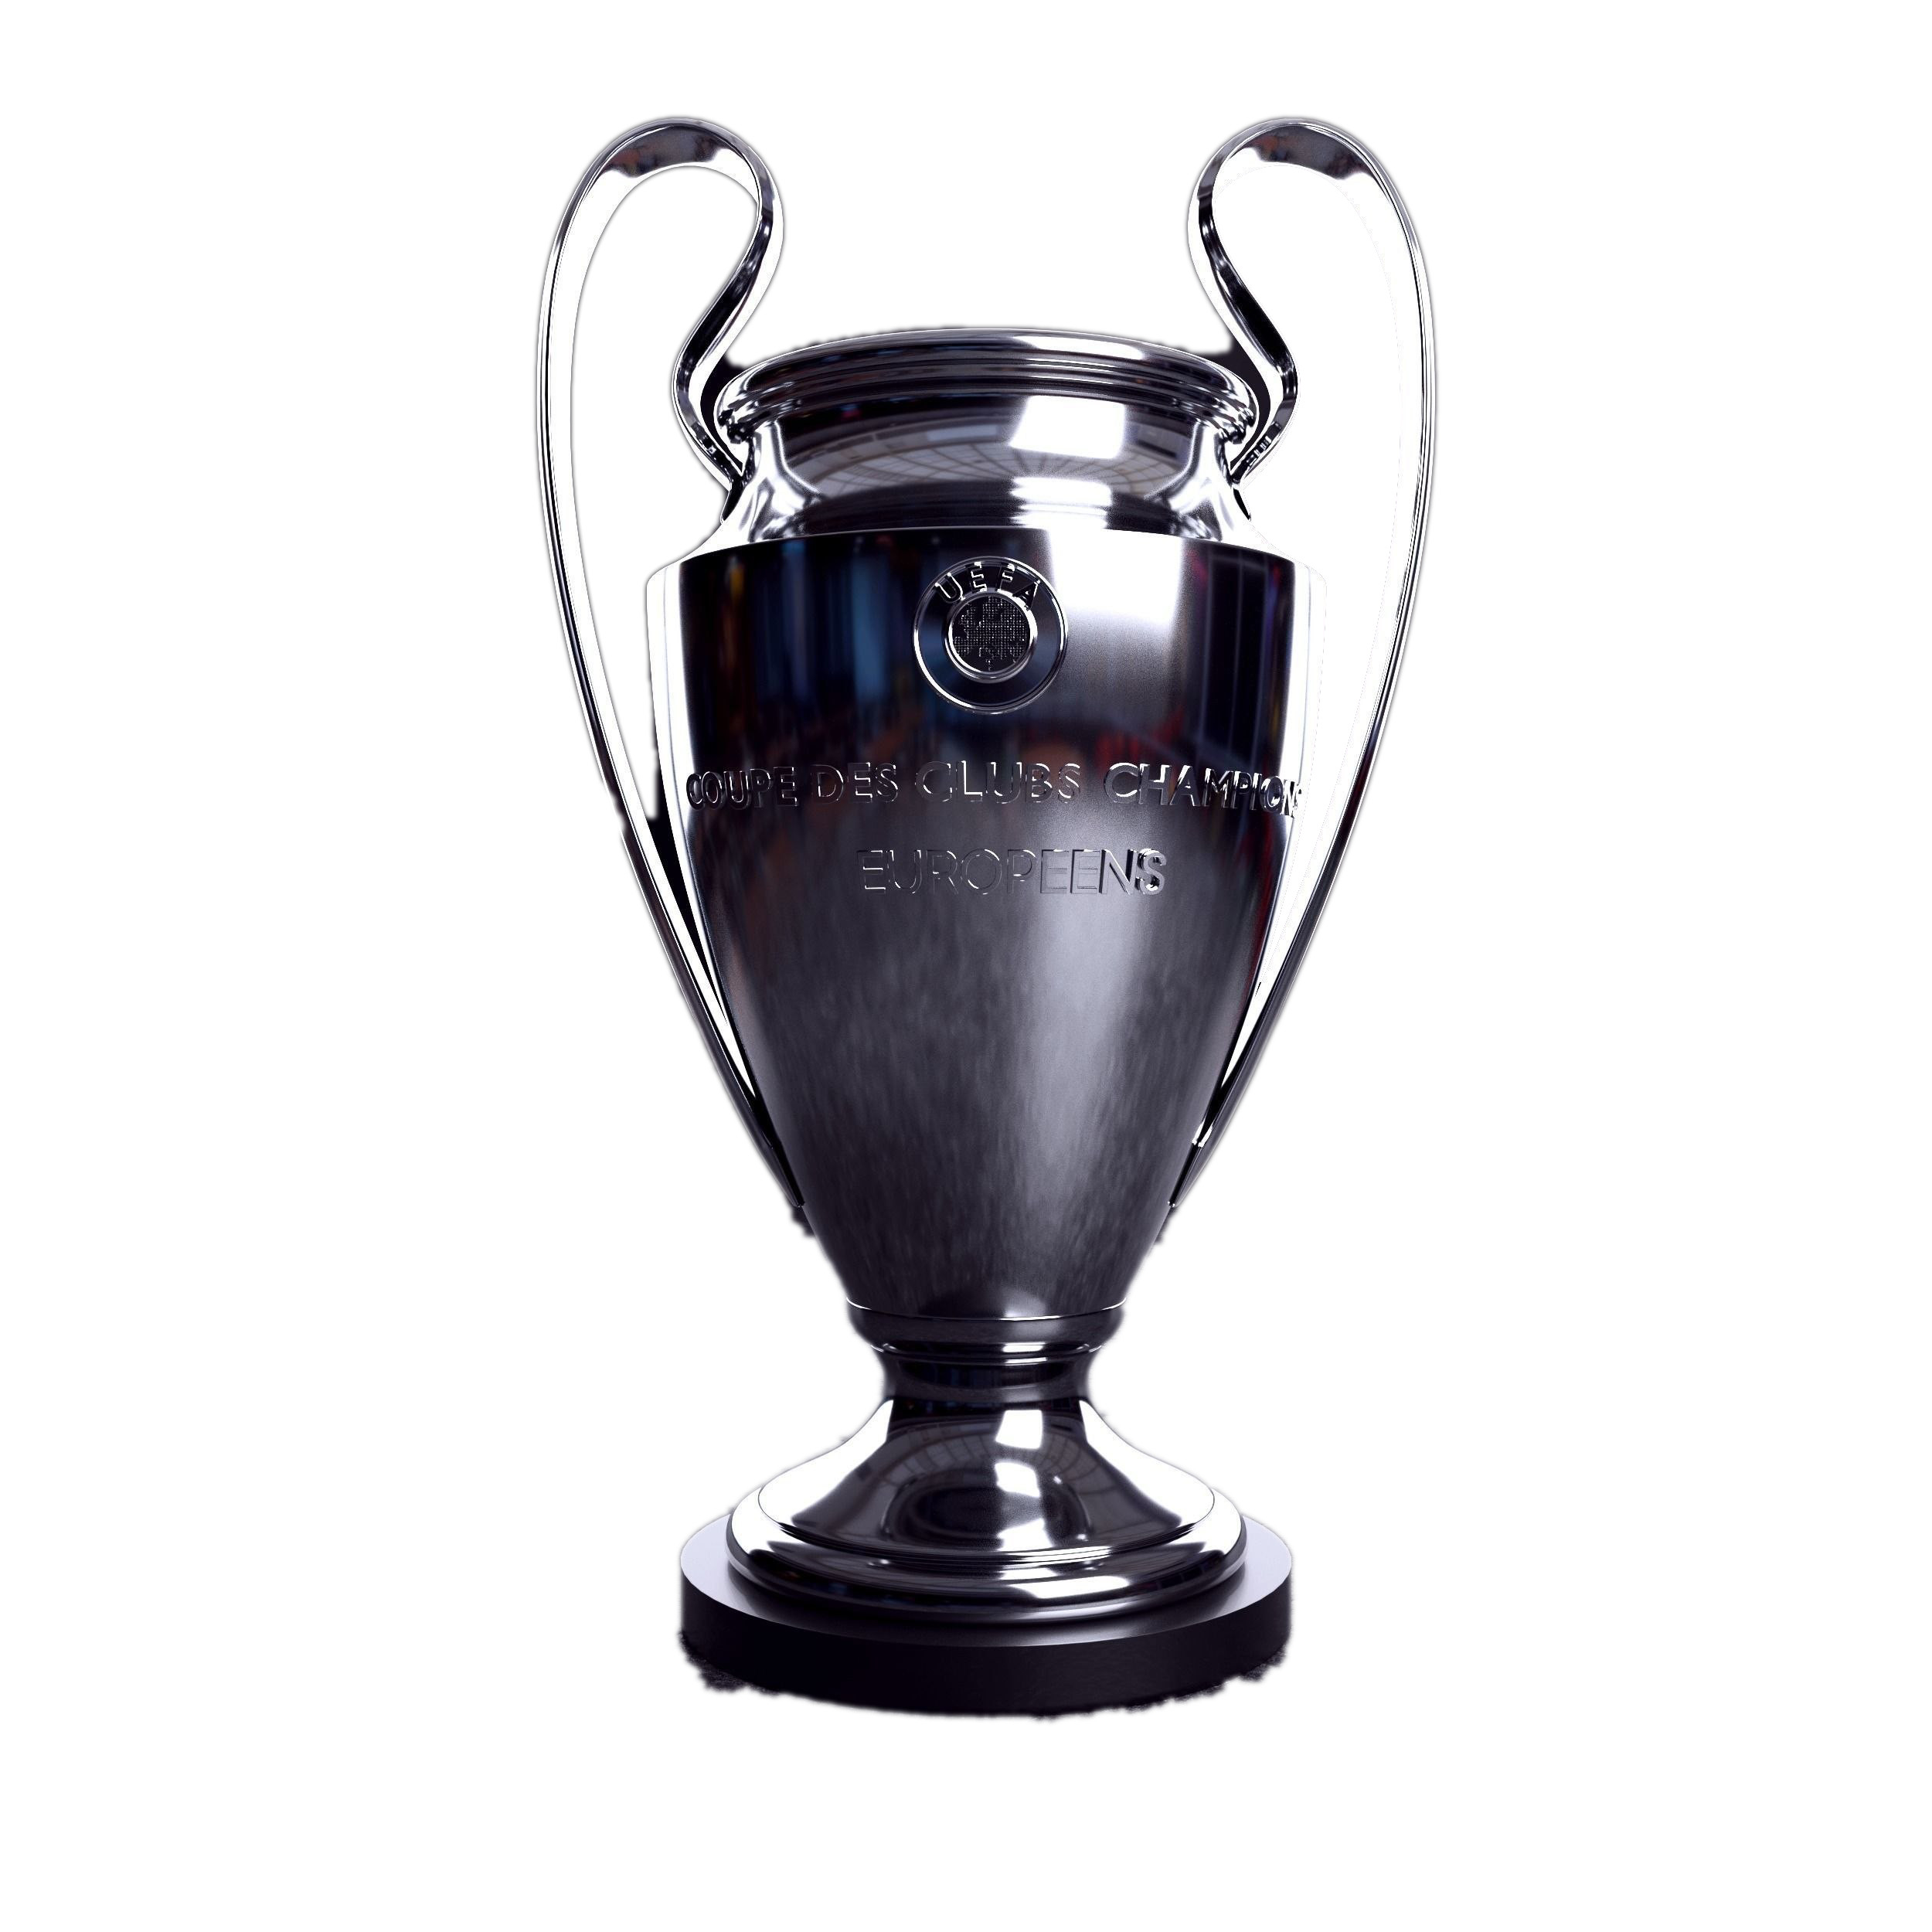 UEFA Champions League PNG Transparent Images, Pictures ...